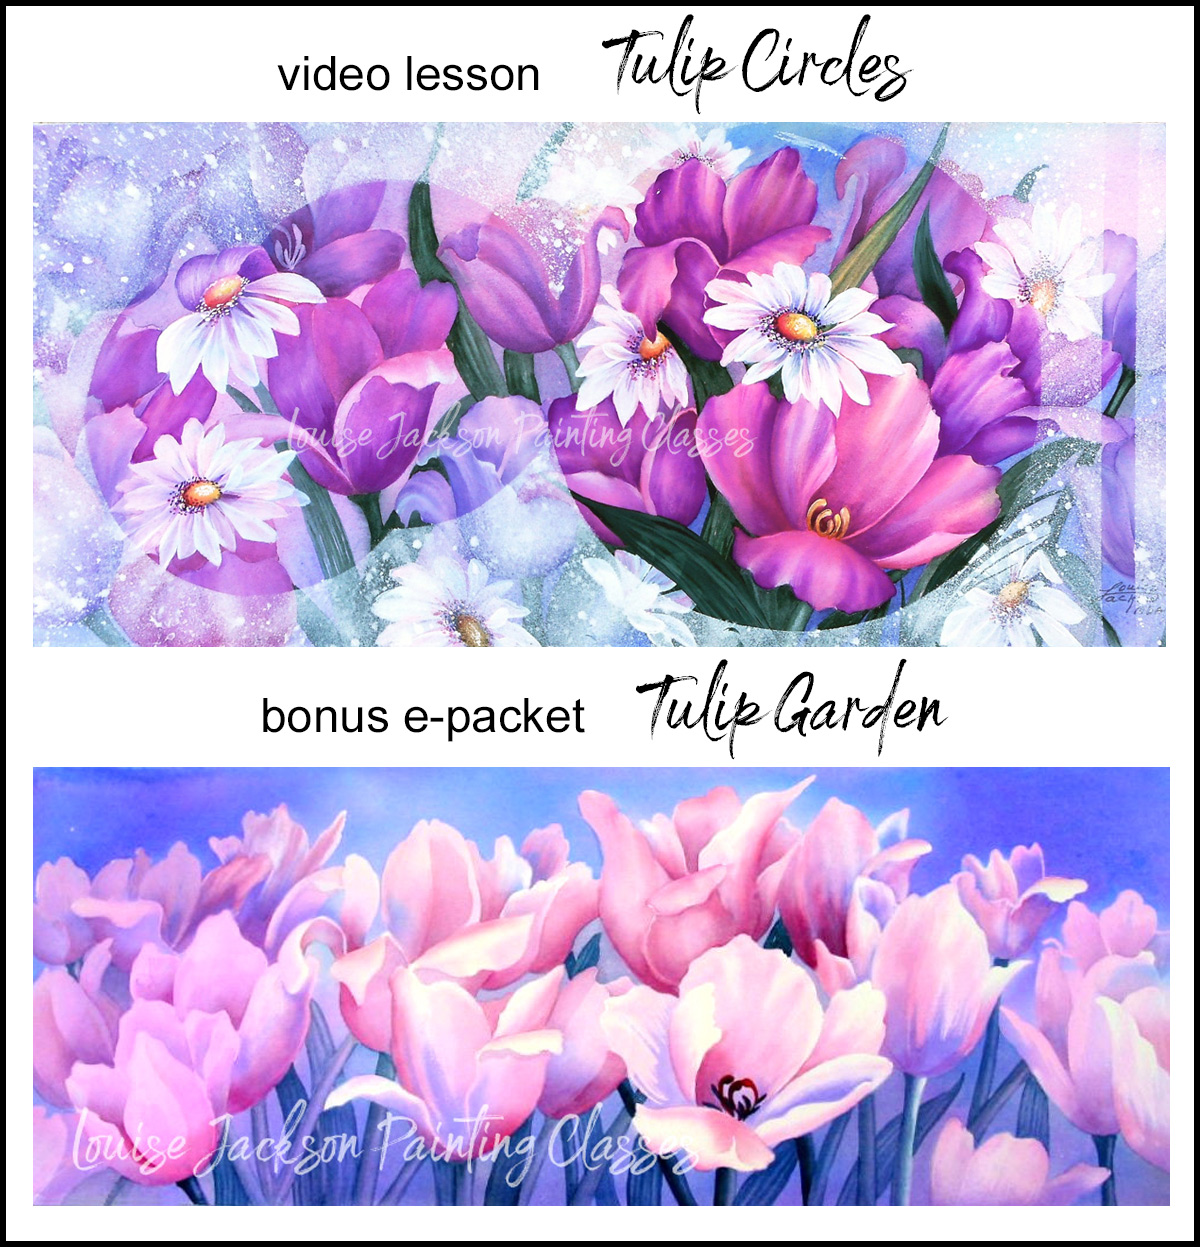 video lesson Tulip Circles and bonus e-packet Tulip Garden